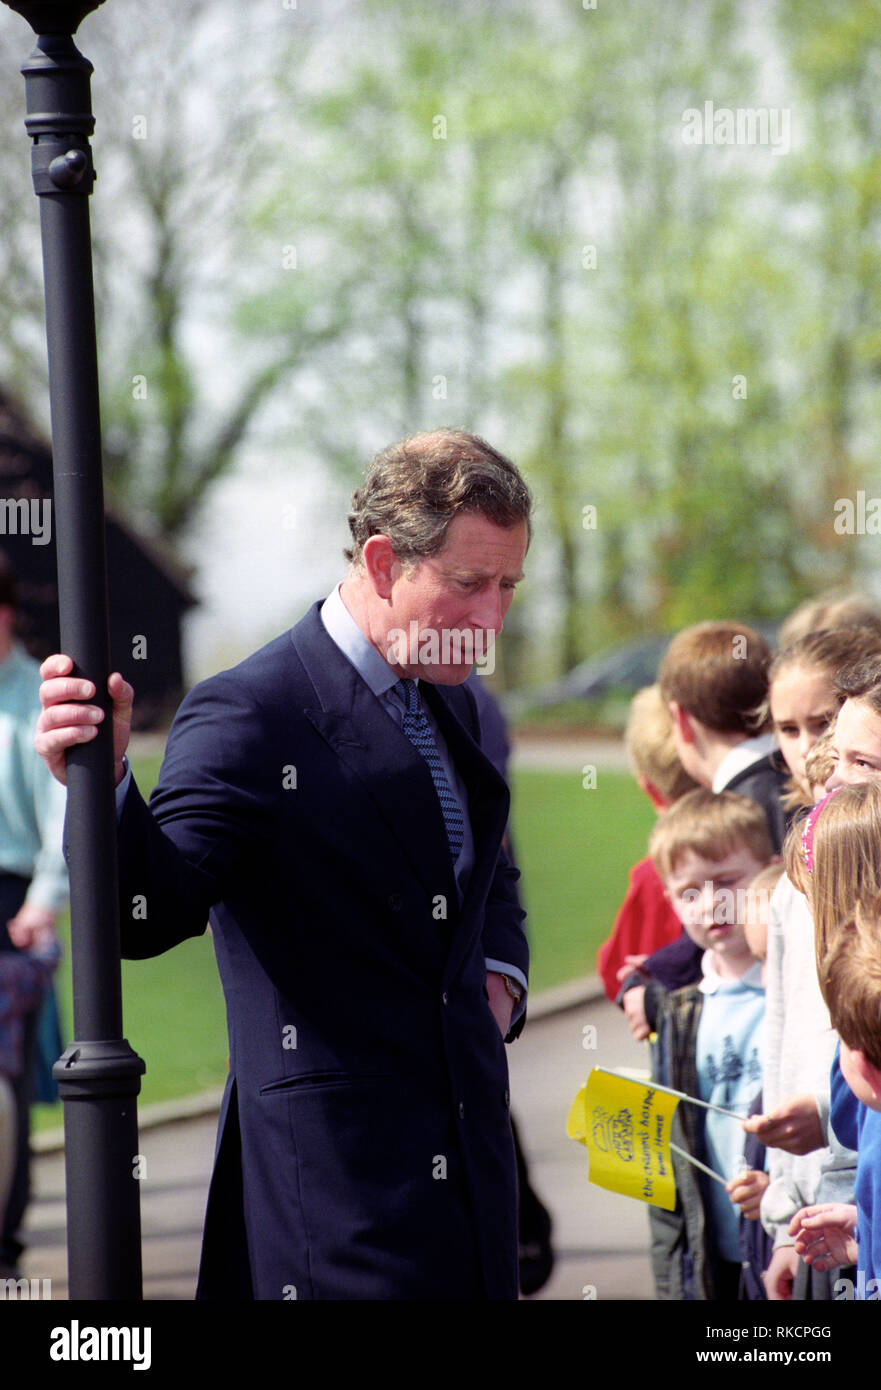 Visite royale à Sutton Scotney, Hampshire, England, UK par SAR le Prince Charles Arthur George, Prince de Galles et comte de Chester, duc de Cornouailles, duc de Rothesay, le mercredi 22 avril 1998 Banque D'Images